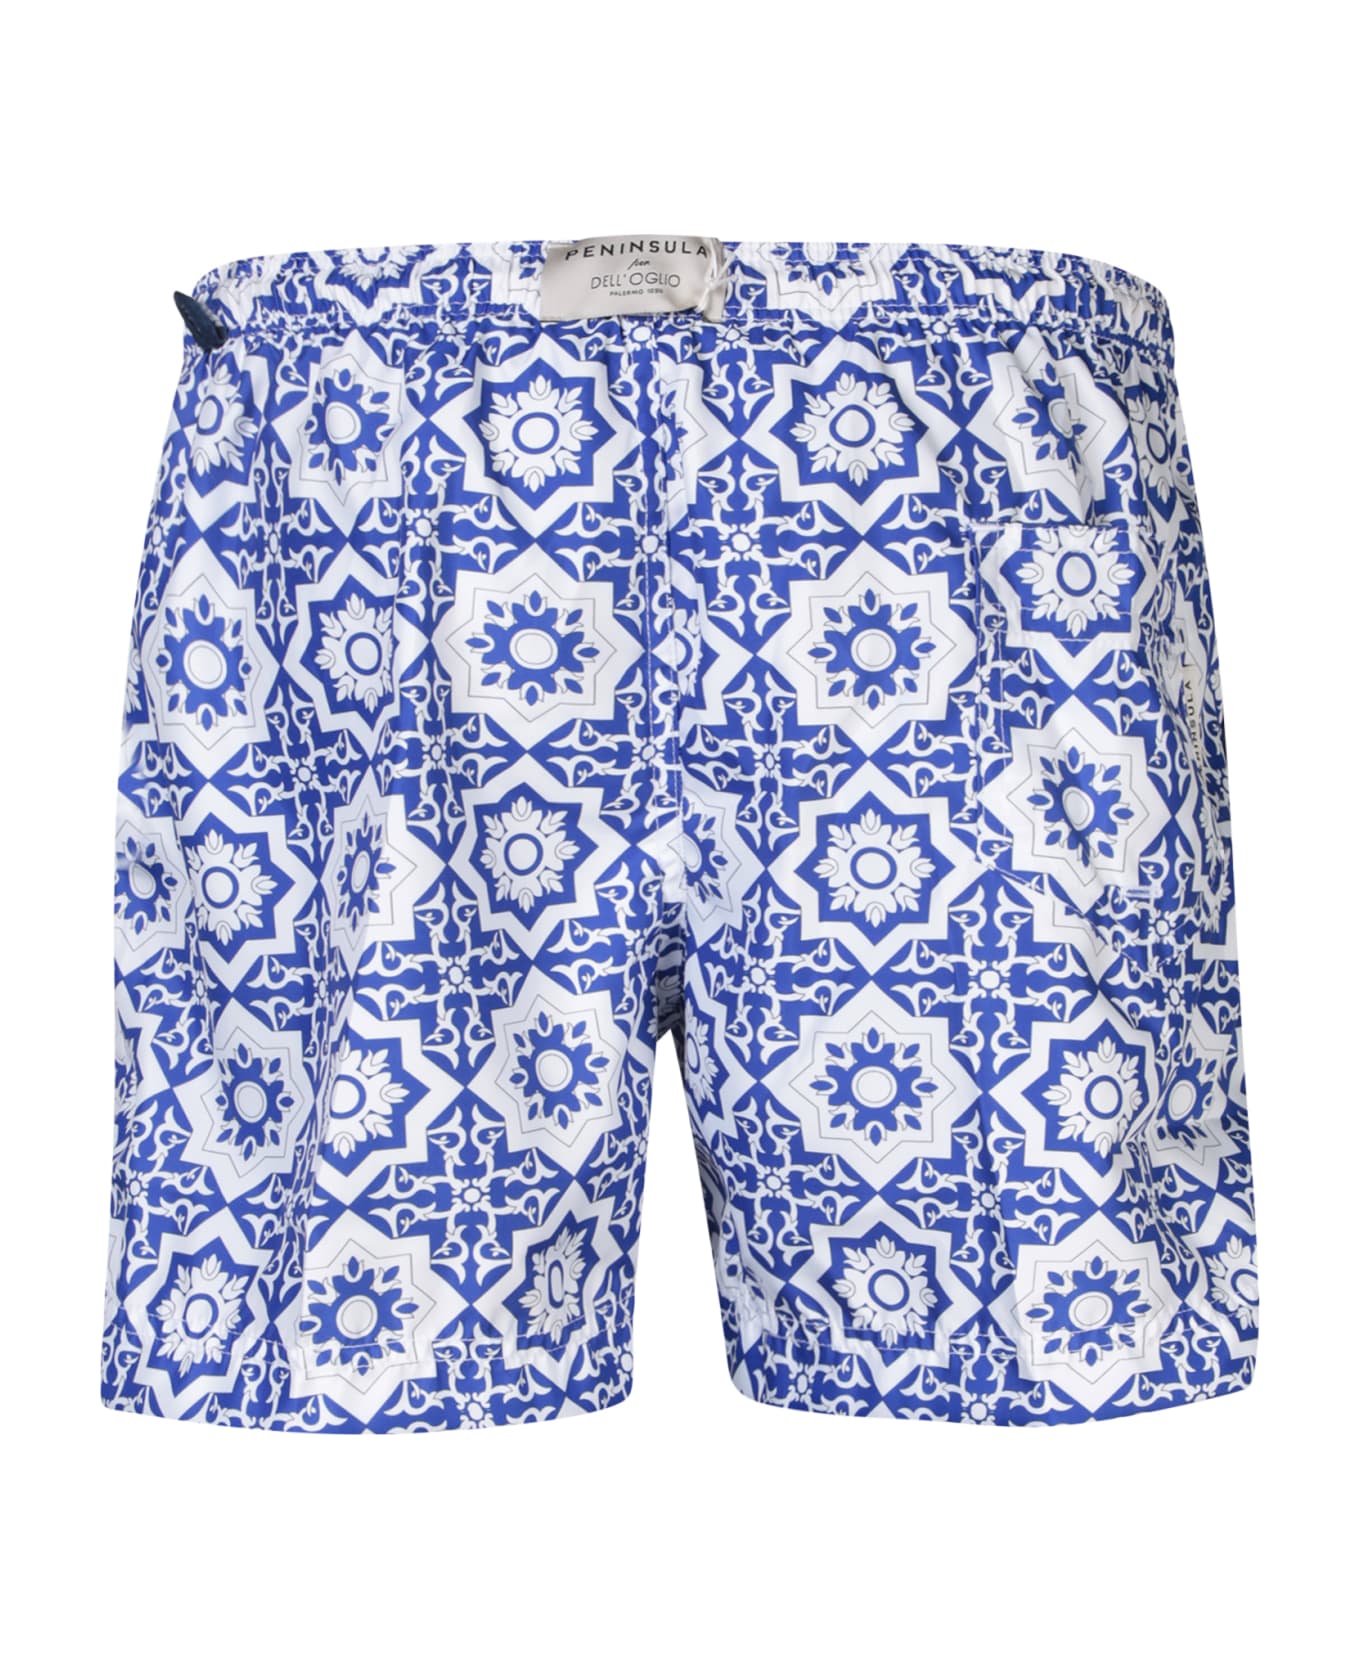 Peninsula Swimwear Patterned Swim Trunks In White/blue - Blue 水着